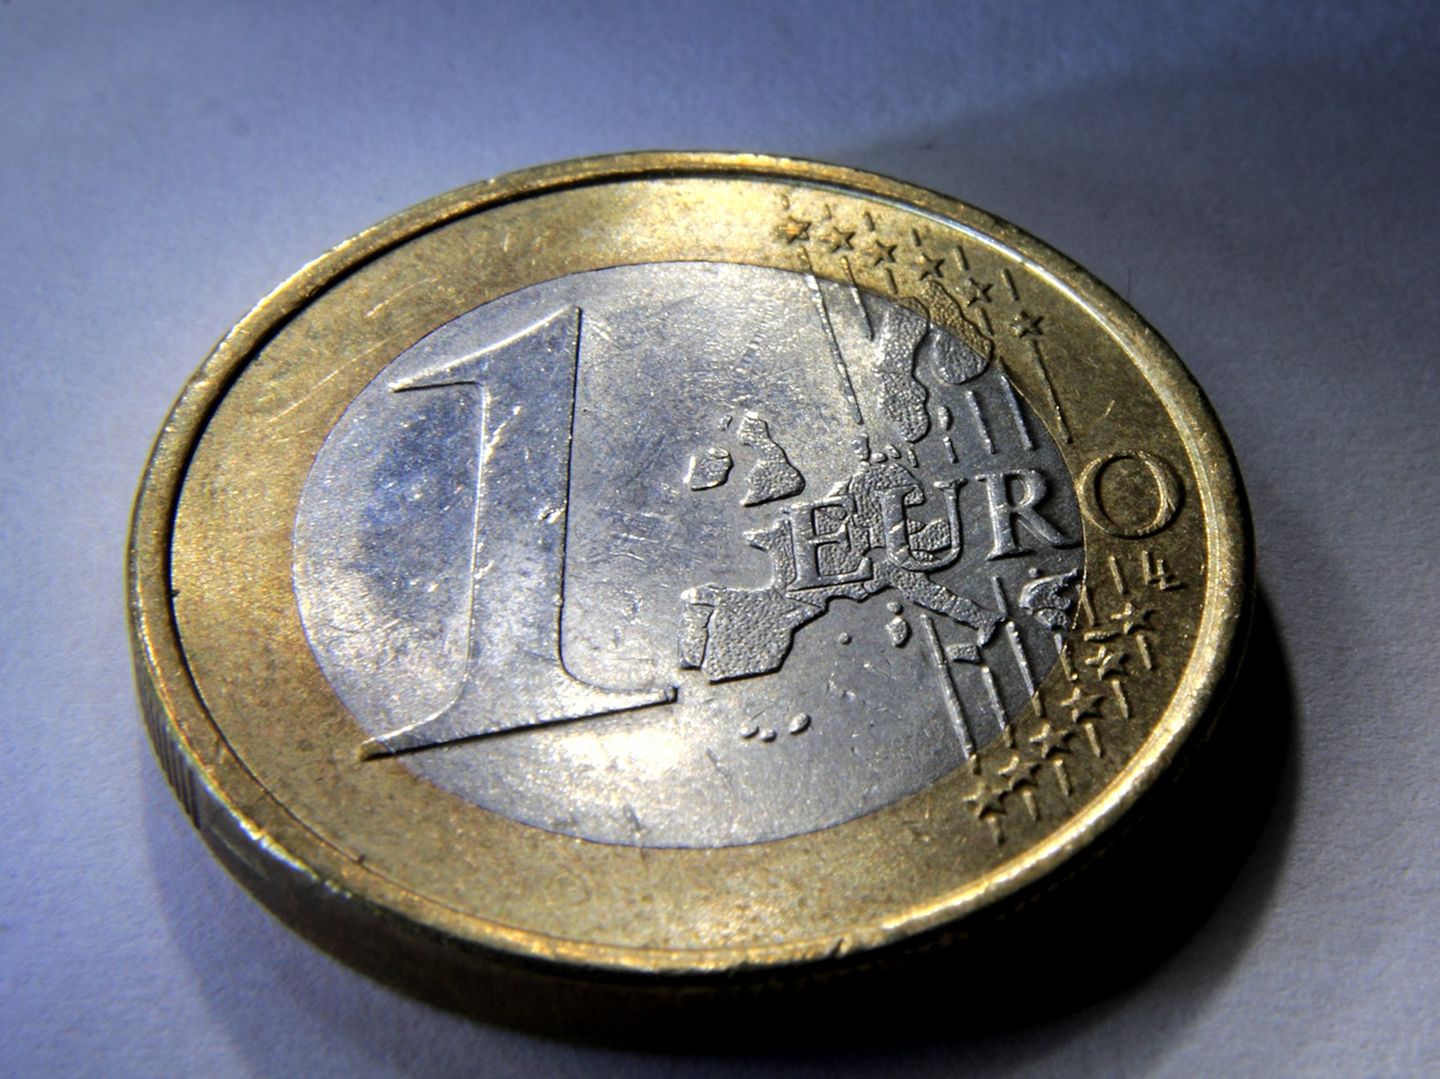 1-Euro-Münzen: Diese Geldstücke sind heute ein Vermögen wert (Video)